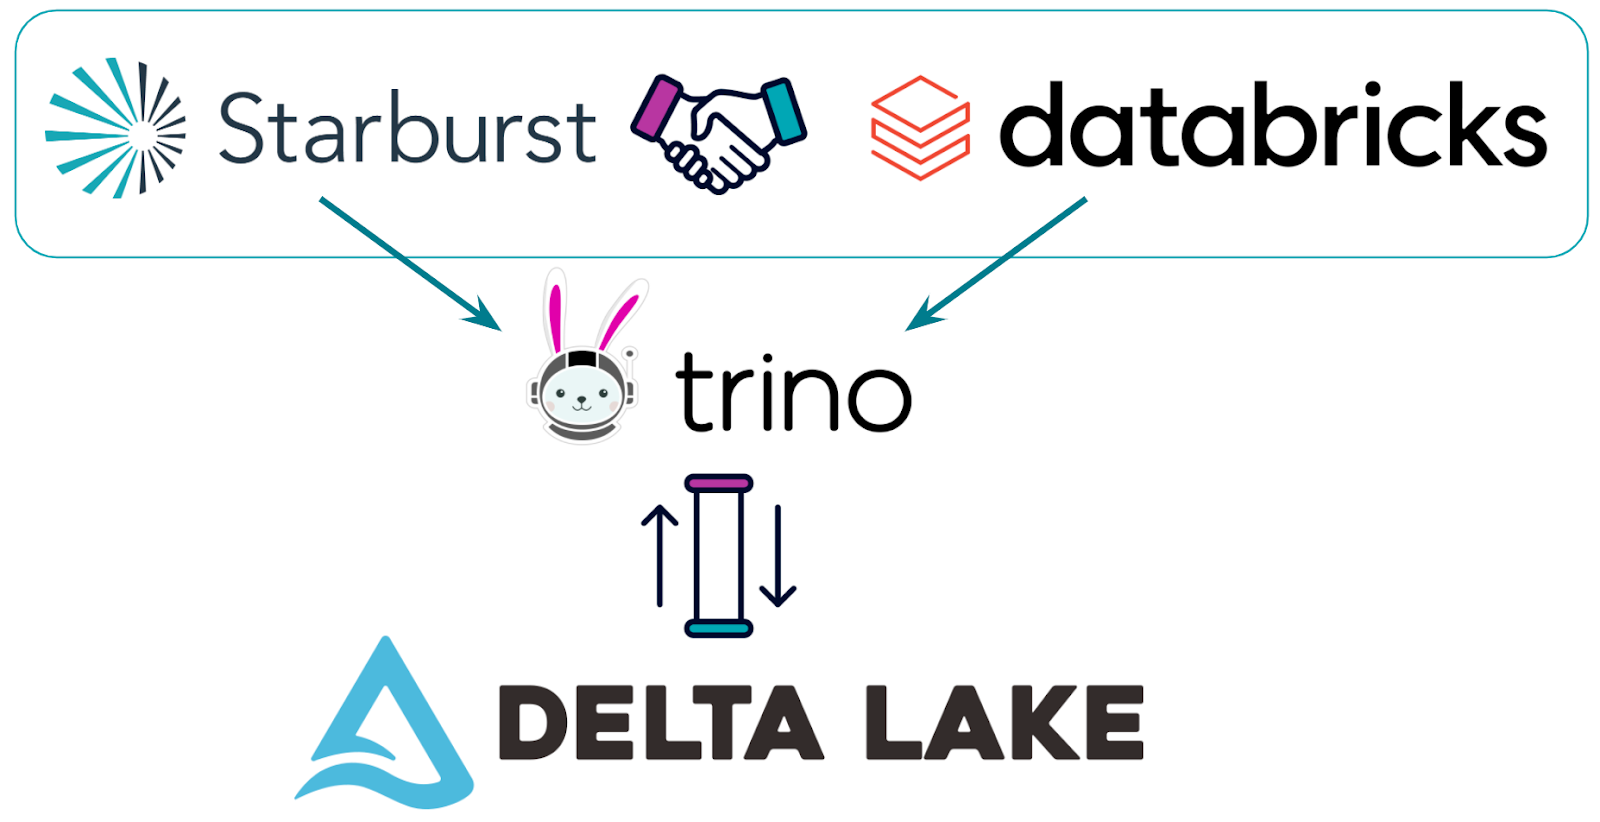 Starburst and Data Lake Data Lake Connector Diagram